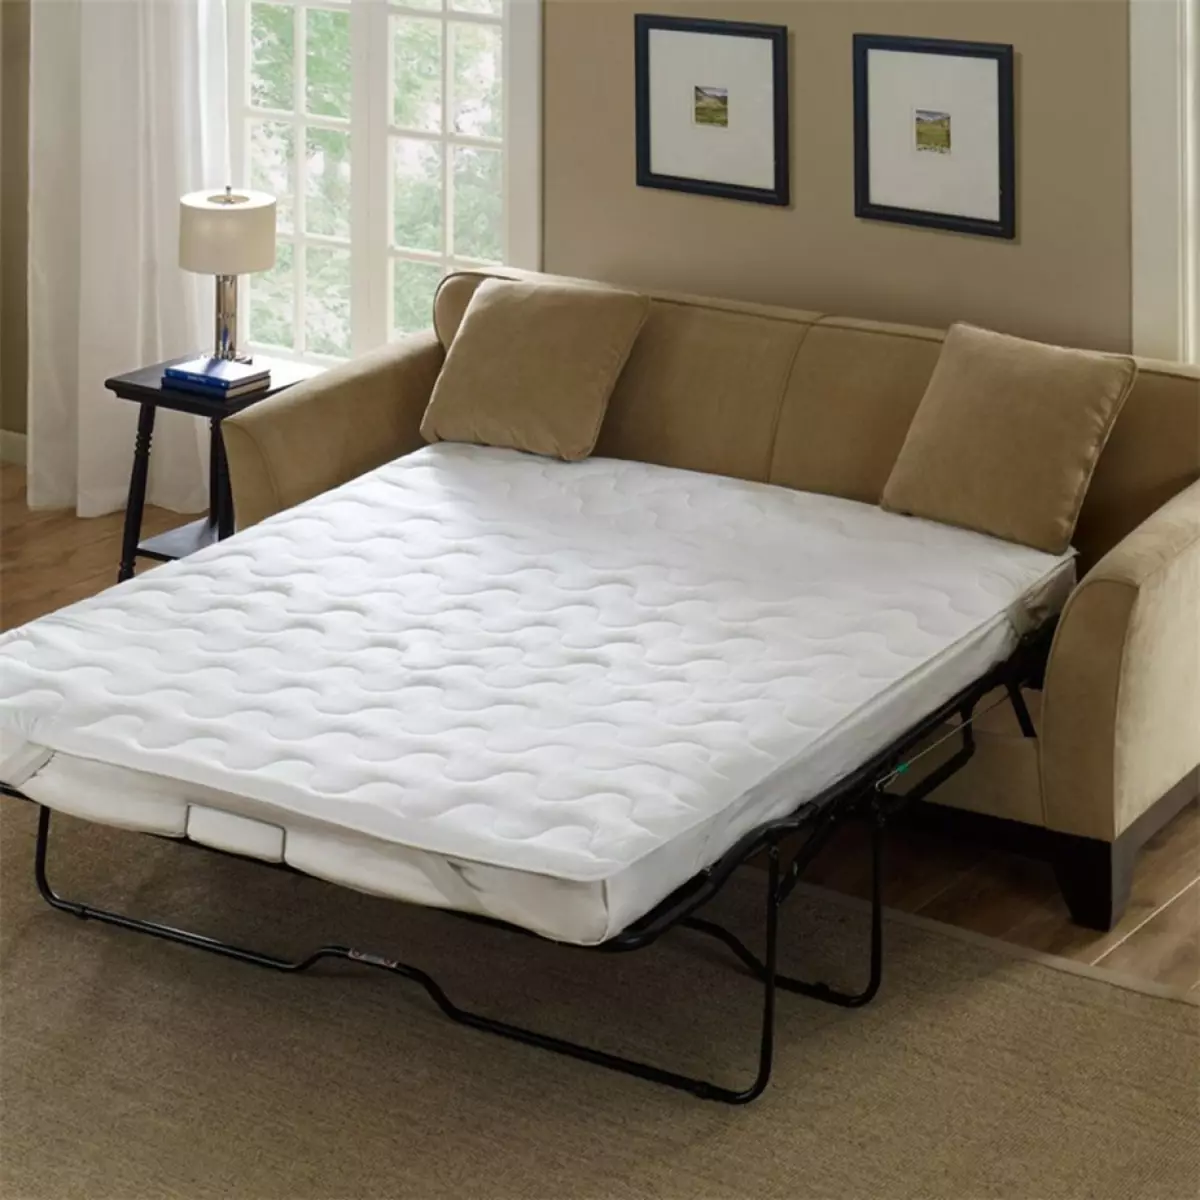 أريكة سرير مع فراش العظام: اختر للاستخدام اليومي بدء تنفيذ وقابلة للطي أريكة مع الربيع وفراش التشريحية 8999_8